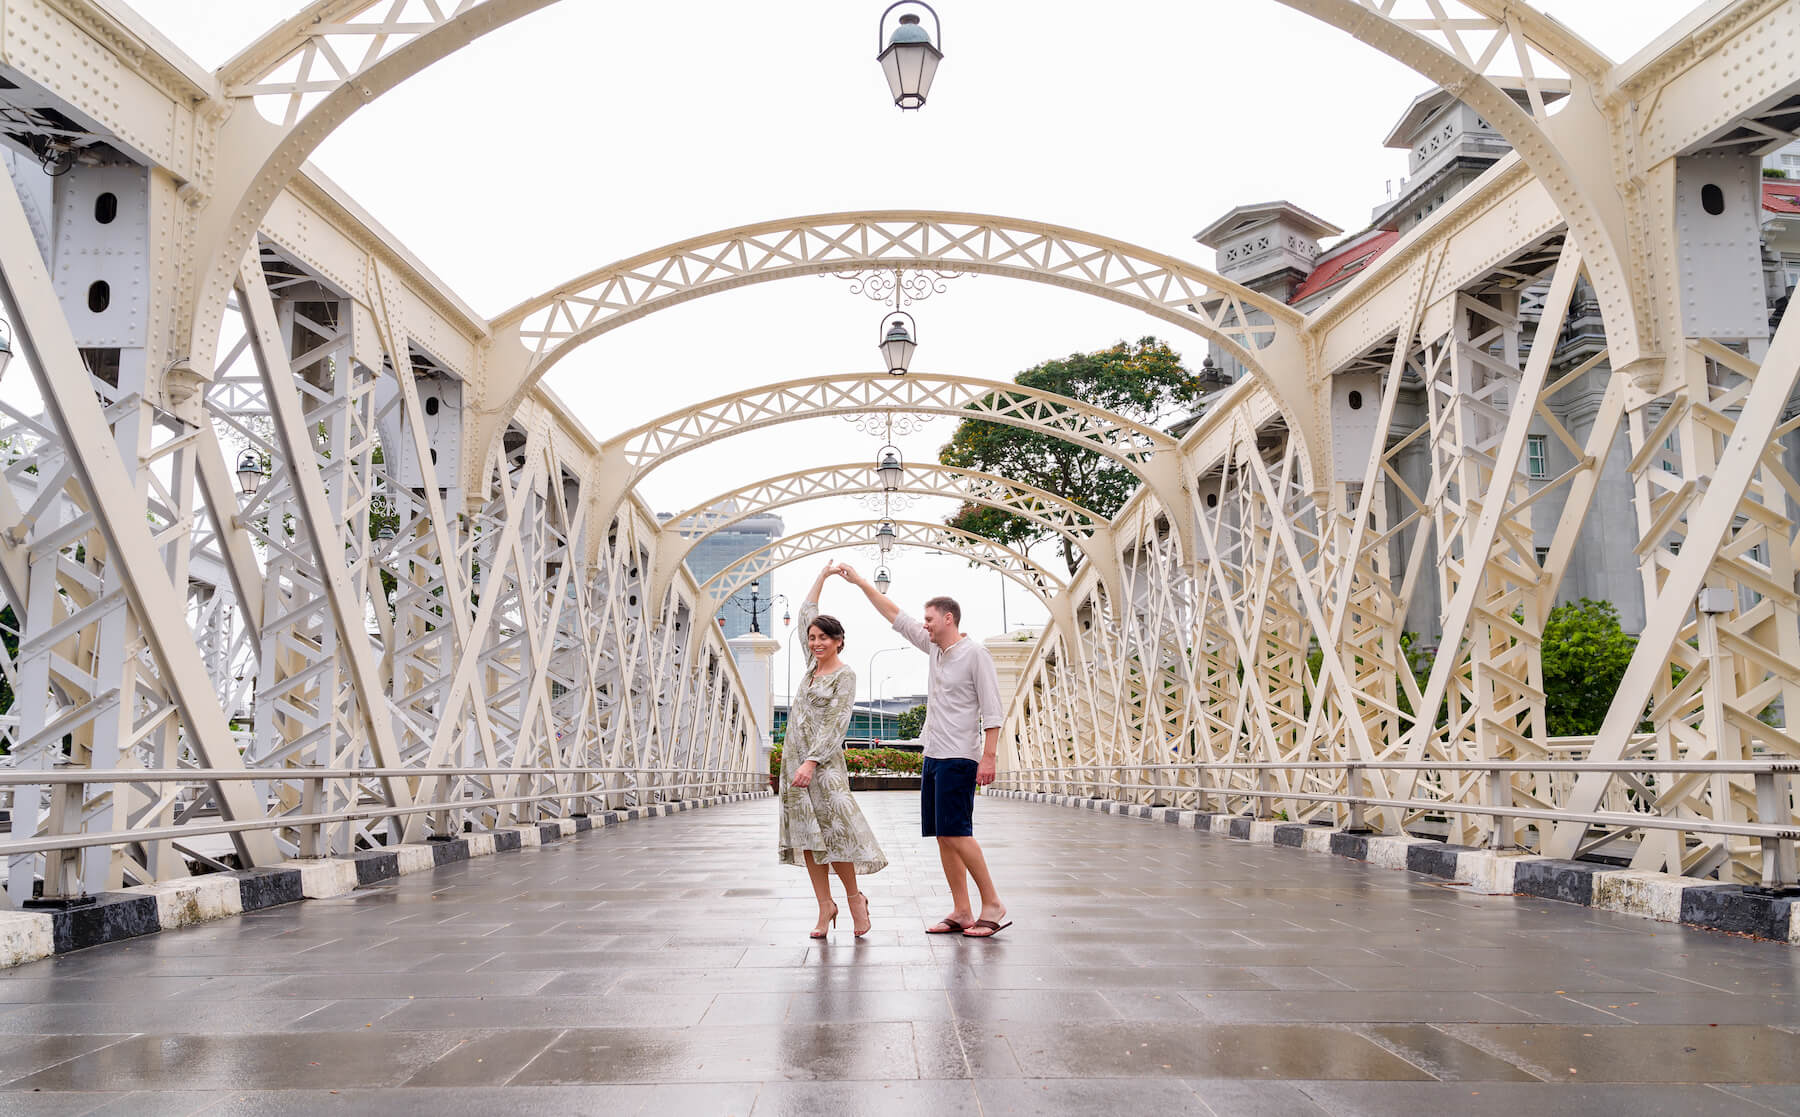 Best bridges to visit in Singapore